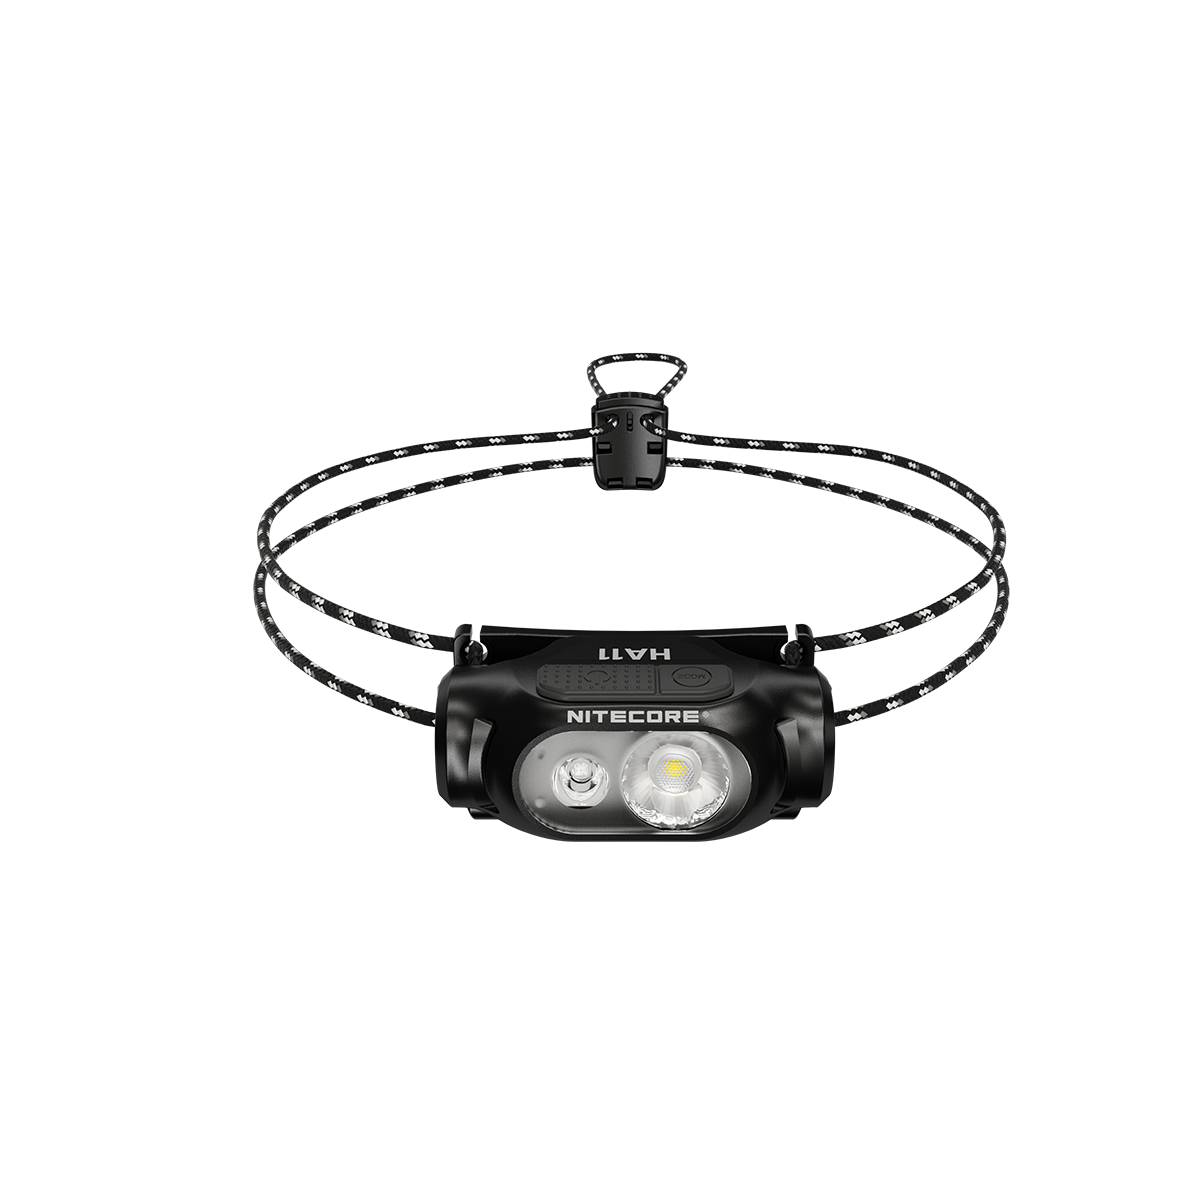 Στα 18,95€ από αποθήκη Κίνας | NITECORE HA11 240 Lumen Lightweight Headlamp Adjustable AA/14500 Battery Mini LED Headlight Flashlight Bike Headlamps